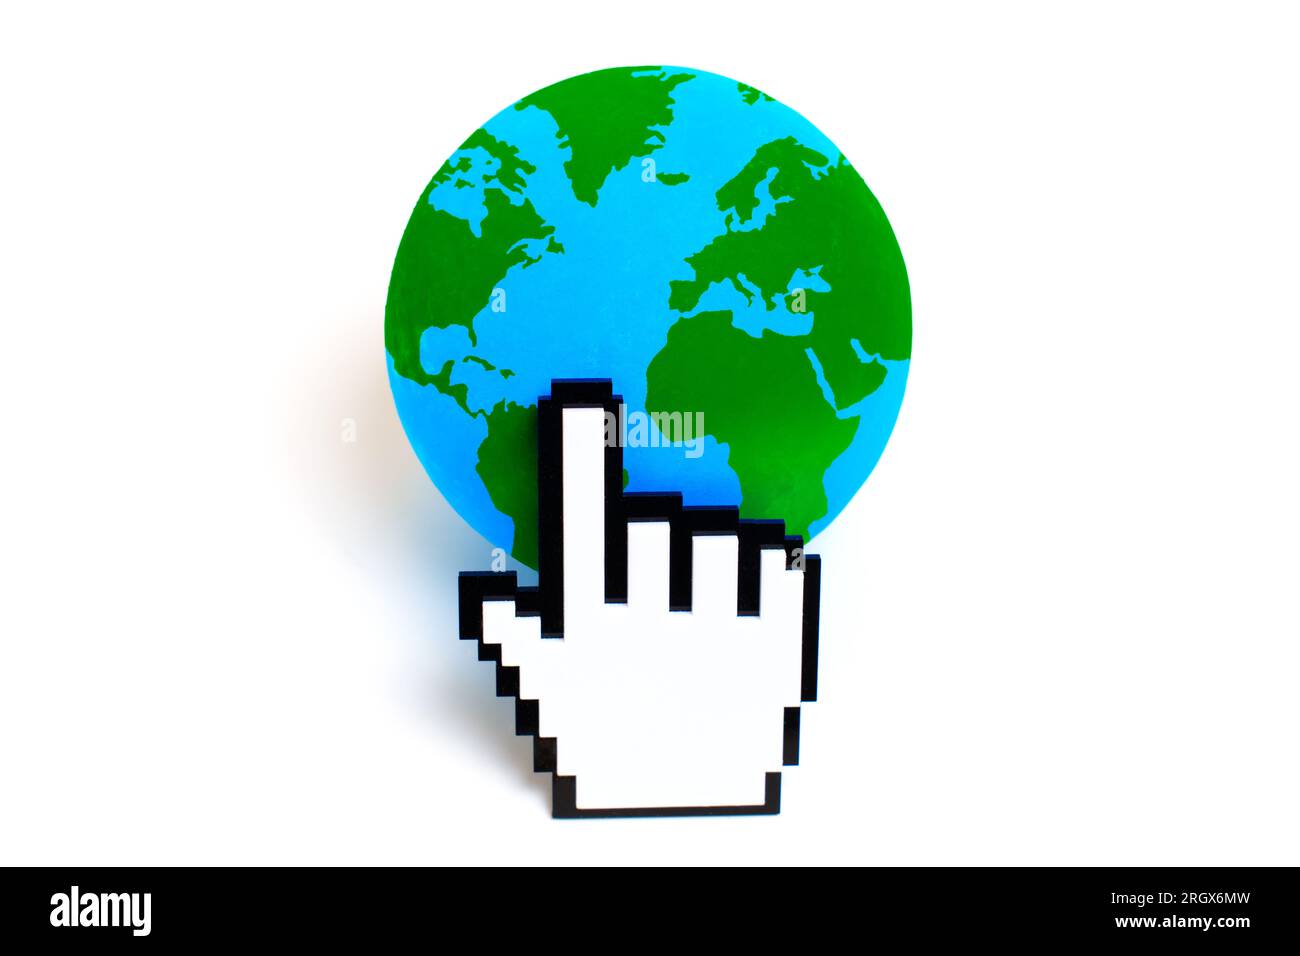 Der weiße, verpixelte Handcursor klickt auf eine leuchtend grüne und blaue Kugel und symbolisiert globale Konnektivität und digitale Interaktion. Stockfoto